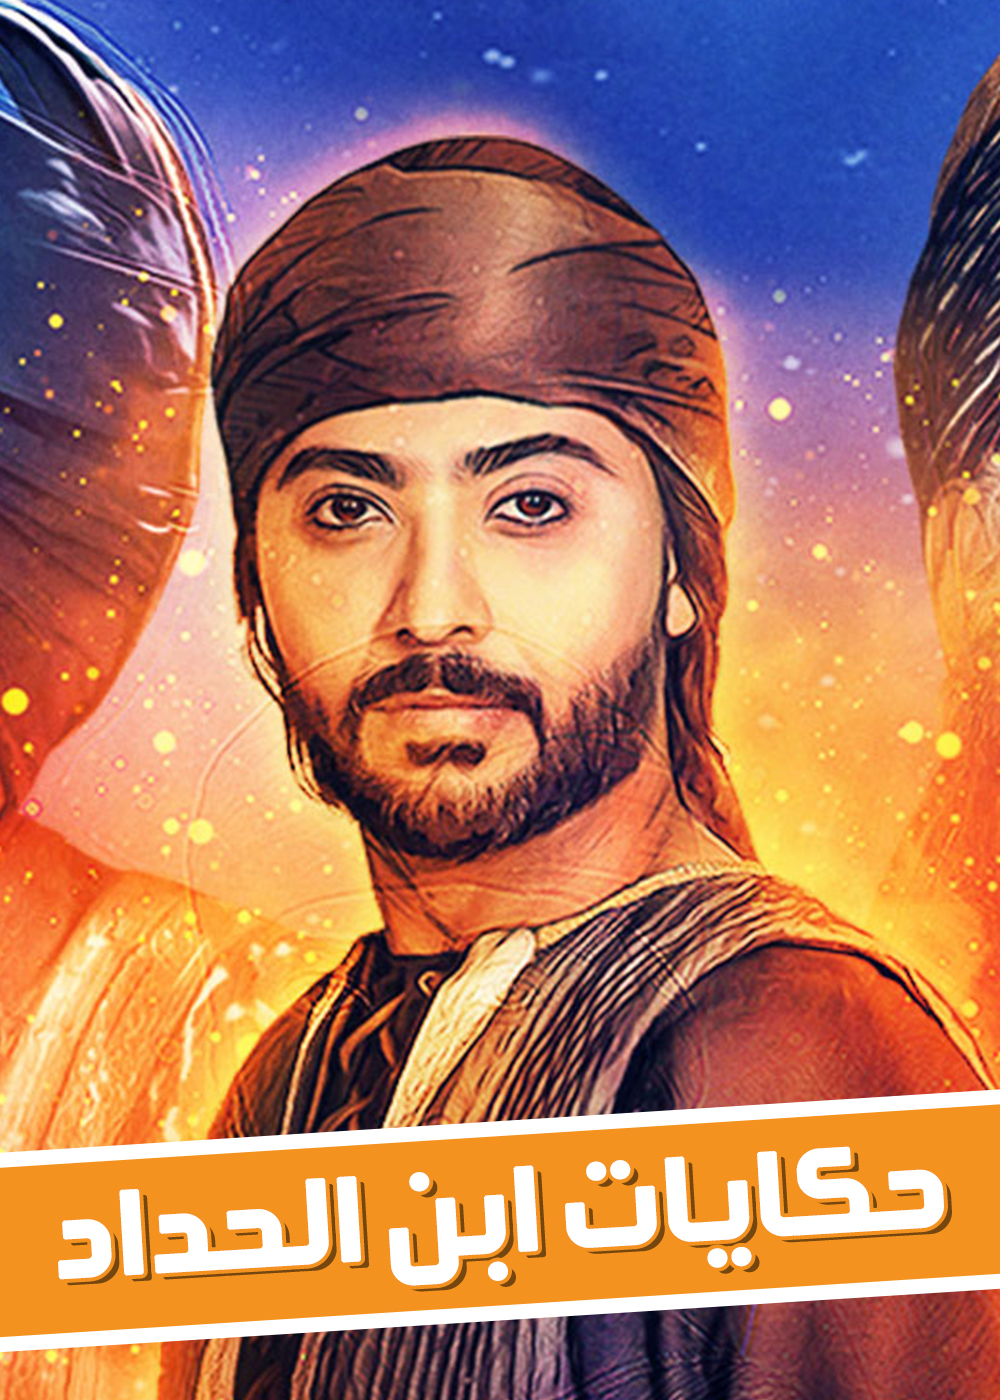 موعد وتوقيت عرض مسلسل حكايات ابن الحداد على قناة سما دبي #رمضان 2020